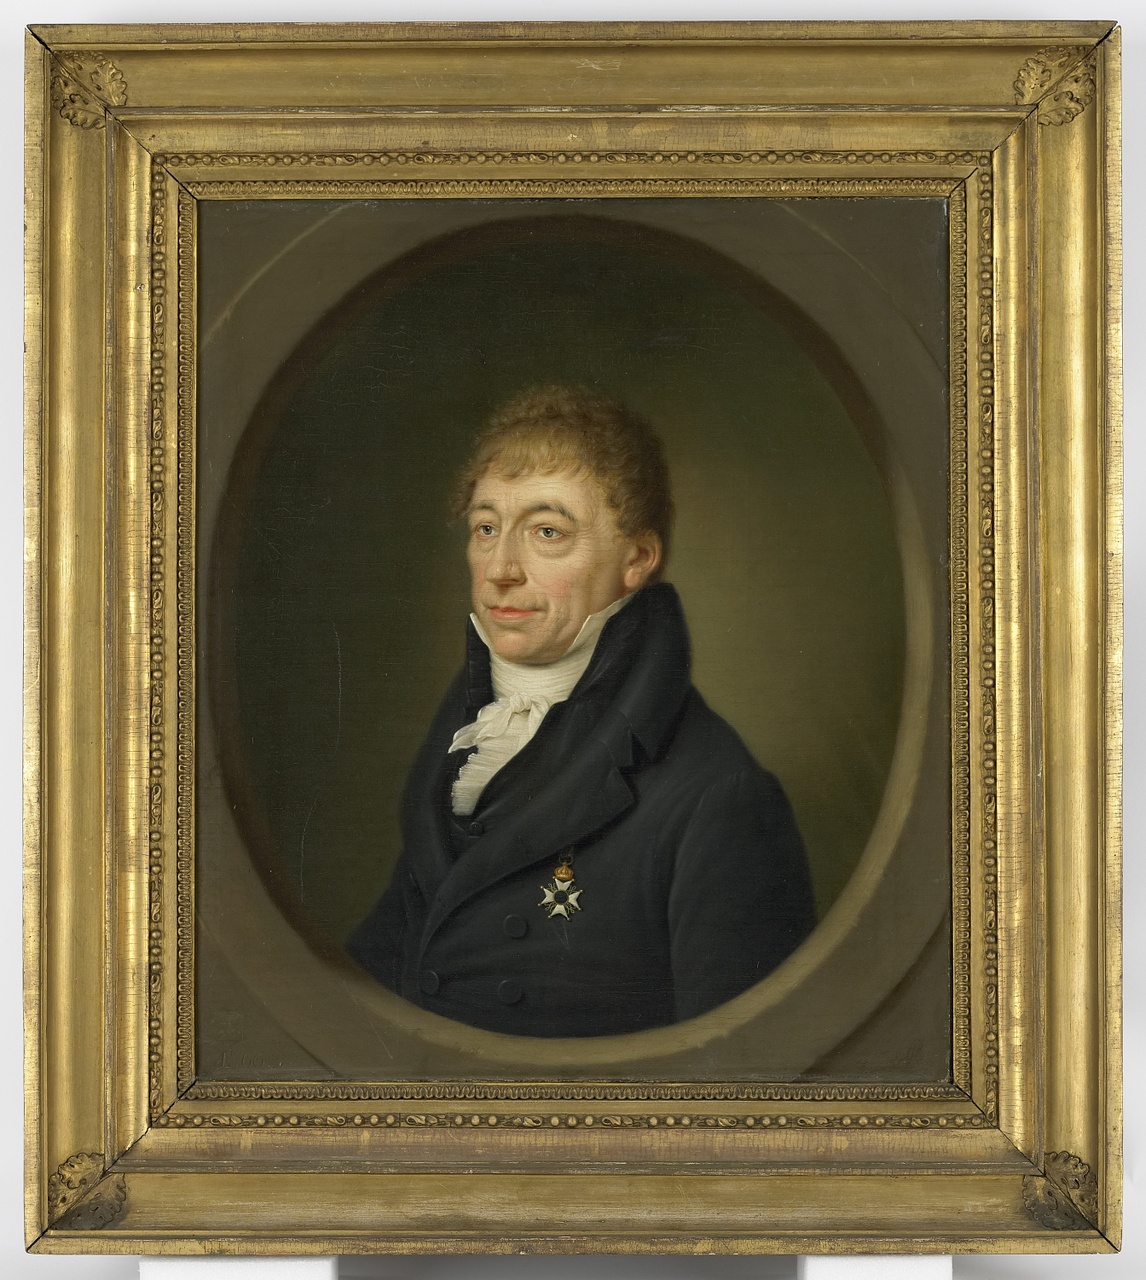 Nicolaas Lambrechtsen van Ritthem (1752-1823), Johan Pieter Bourjé